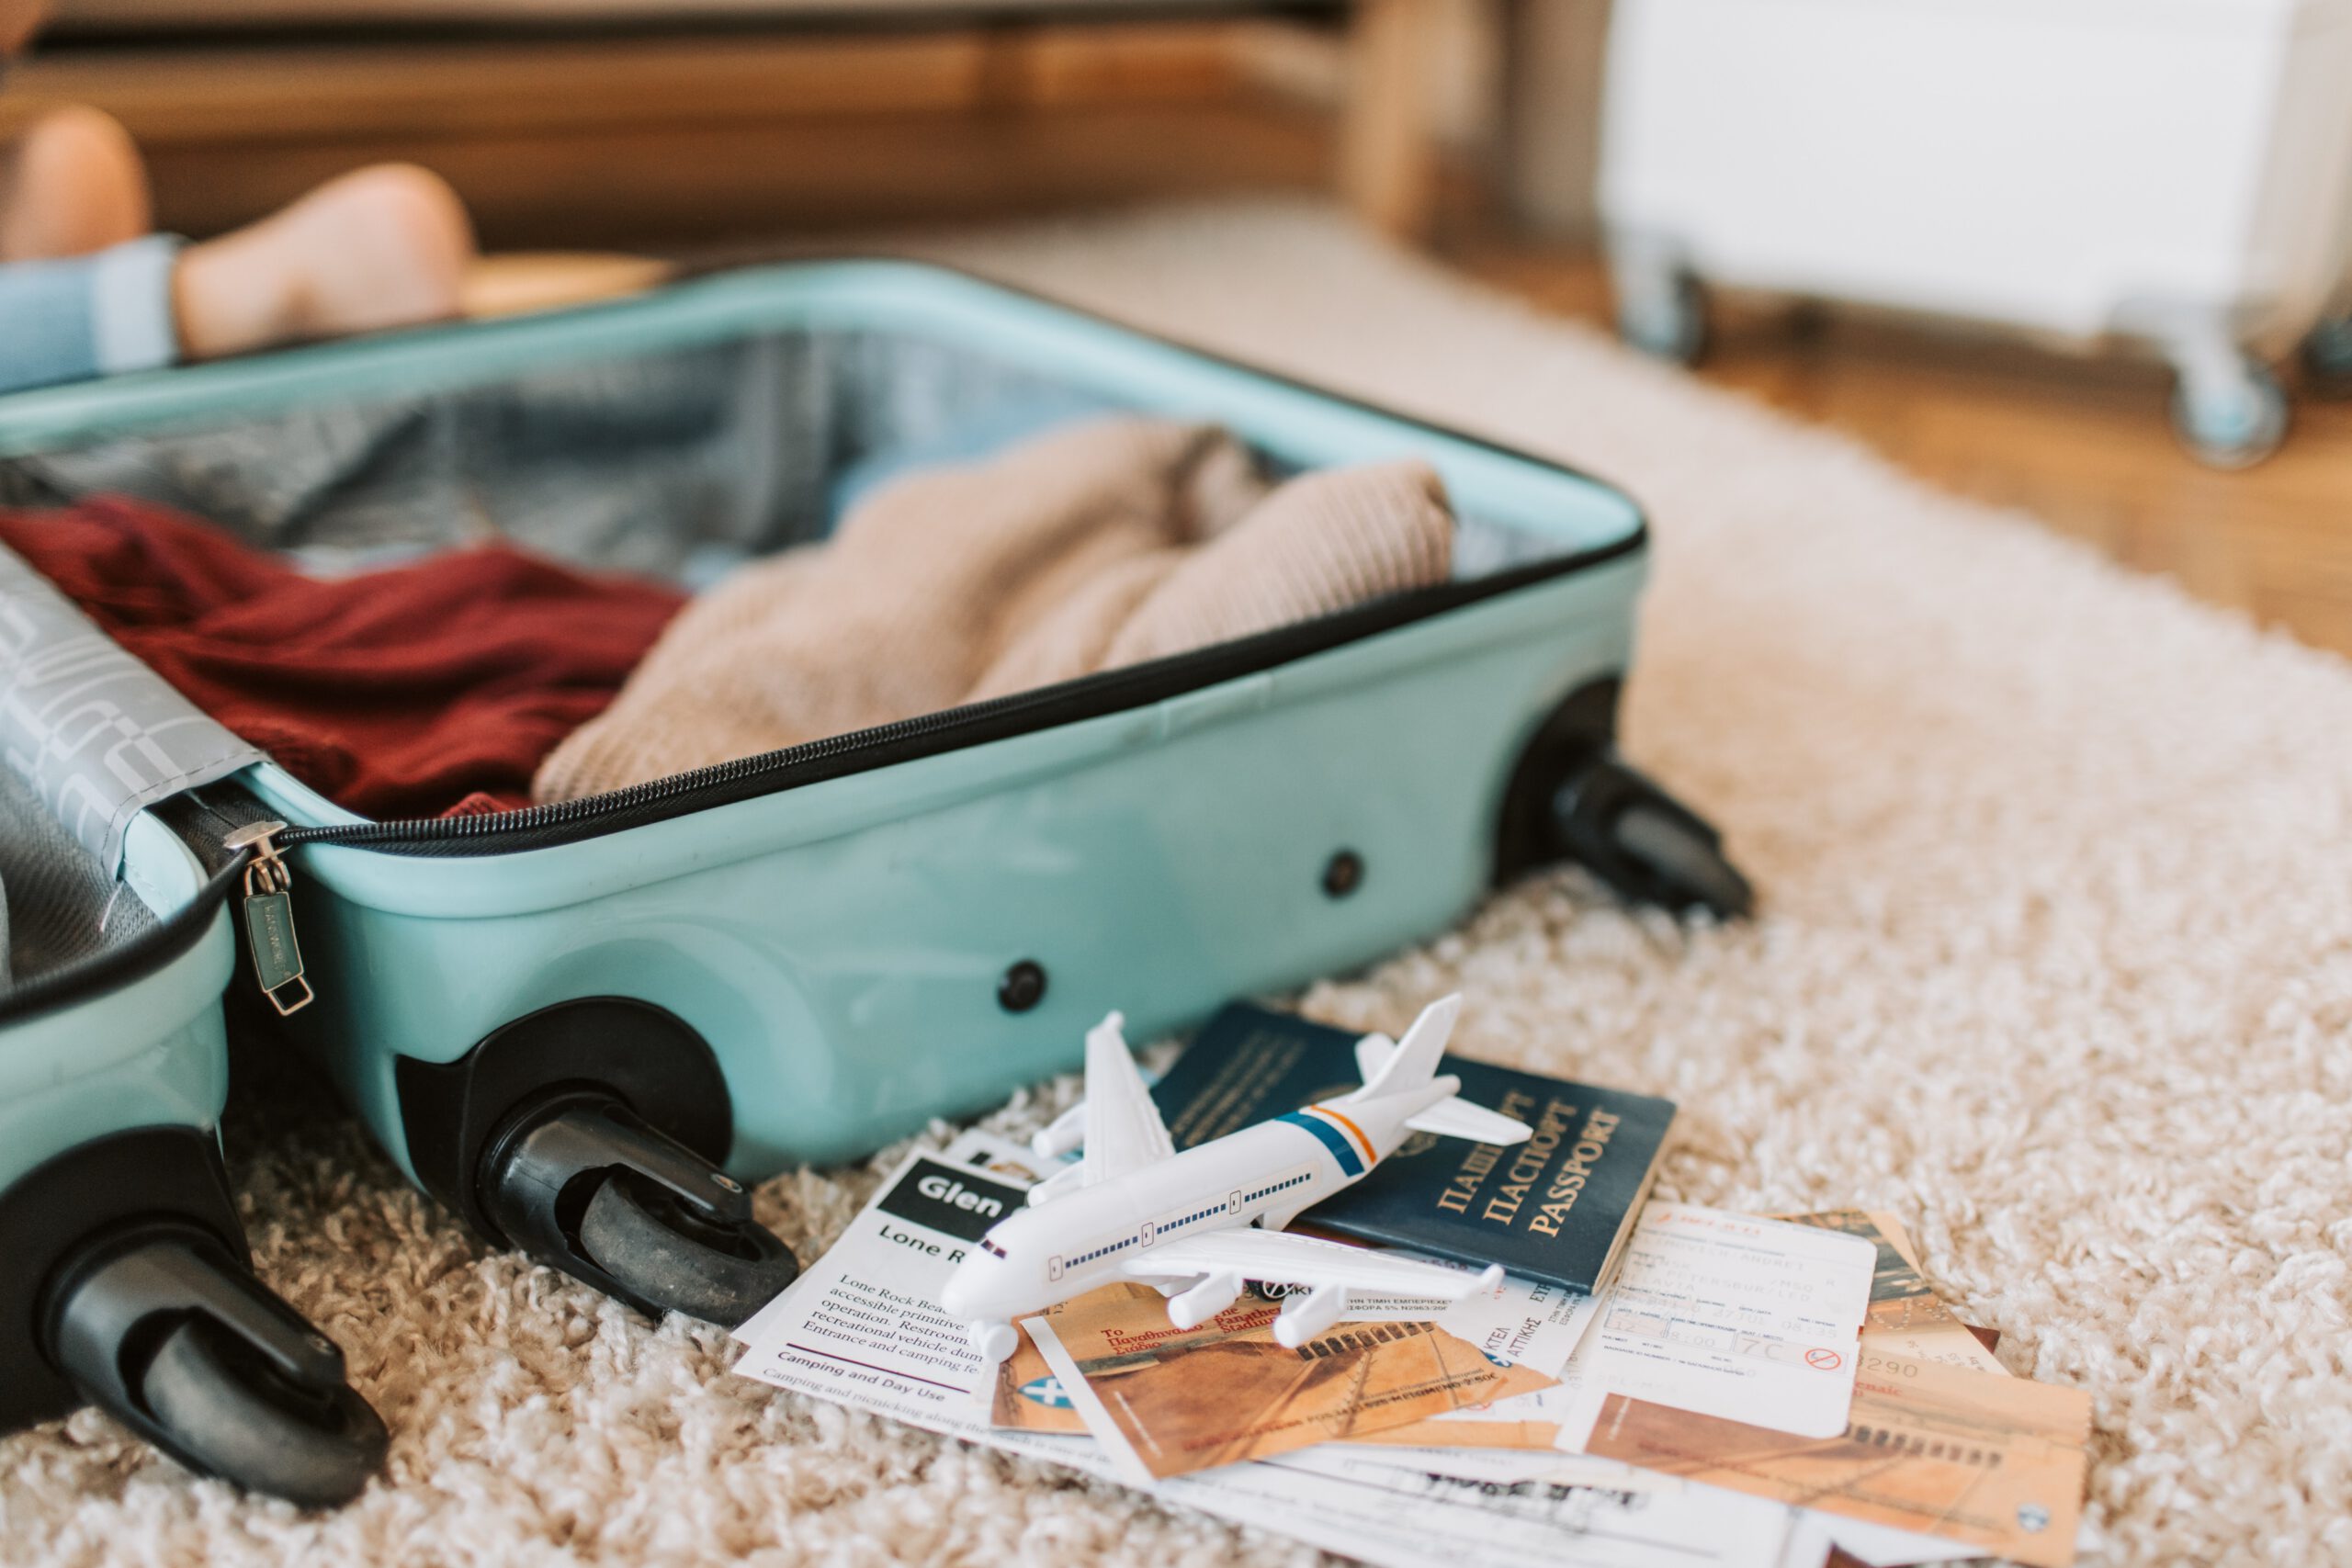 Paszport leżący na dywanie obok w połowie spakowanej walizki, przykryty w części ubraniami i innymi rzeczami